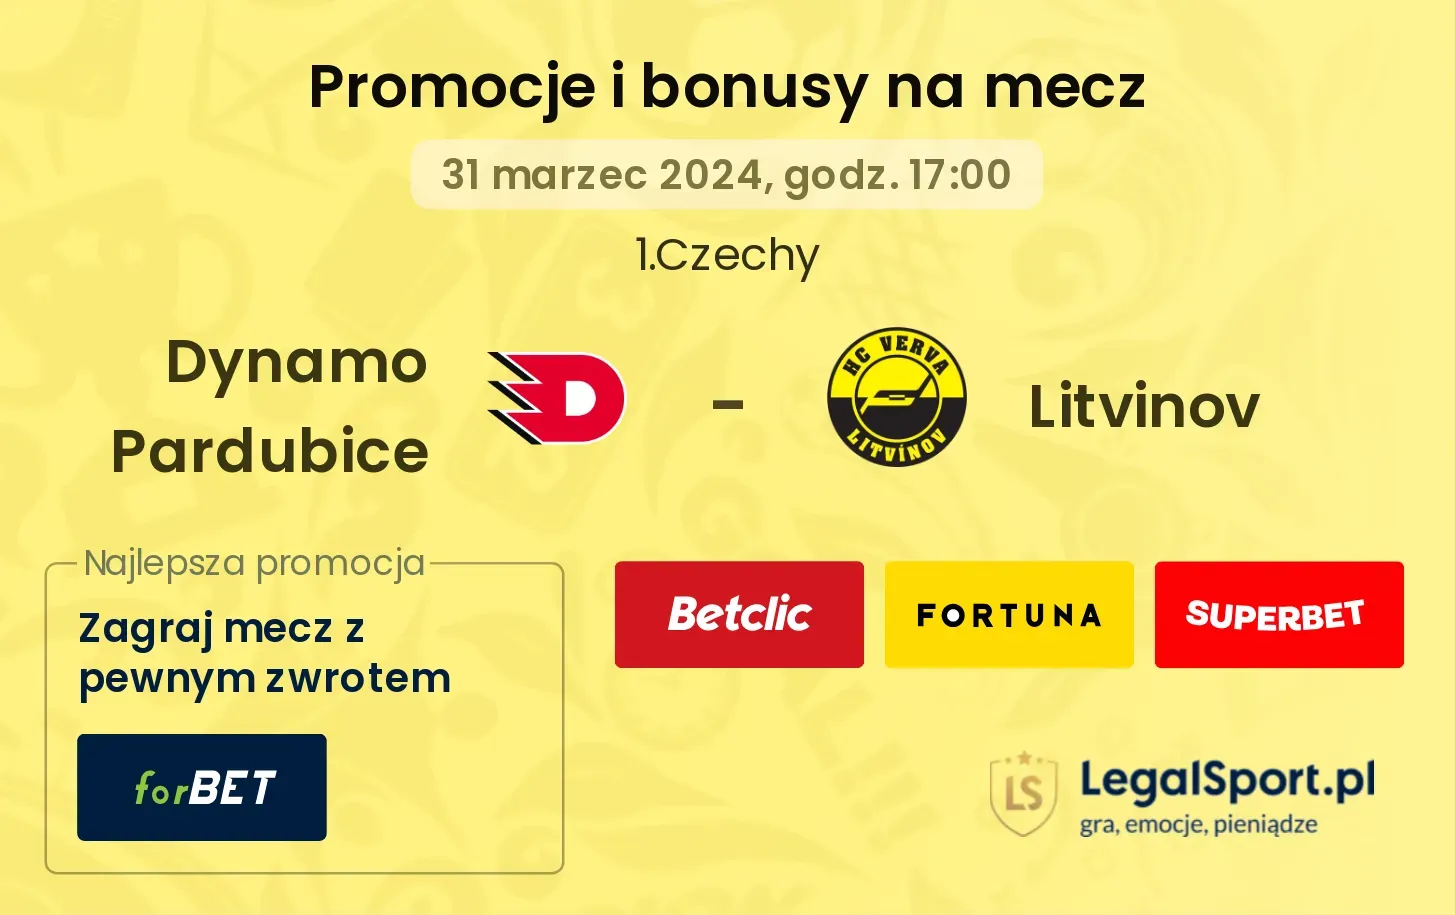 Dynamo Pardubice - Litvinov promocje bonusy na mecz